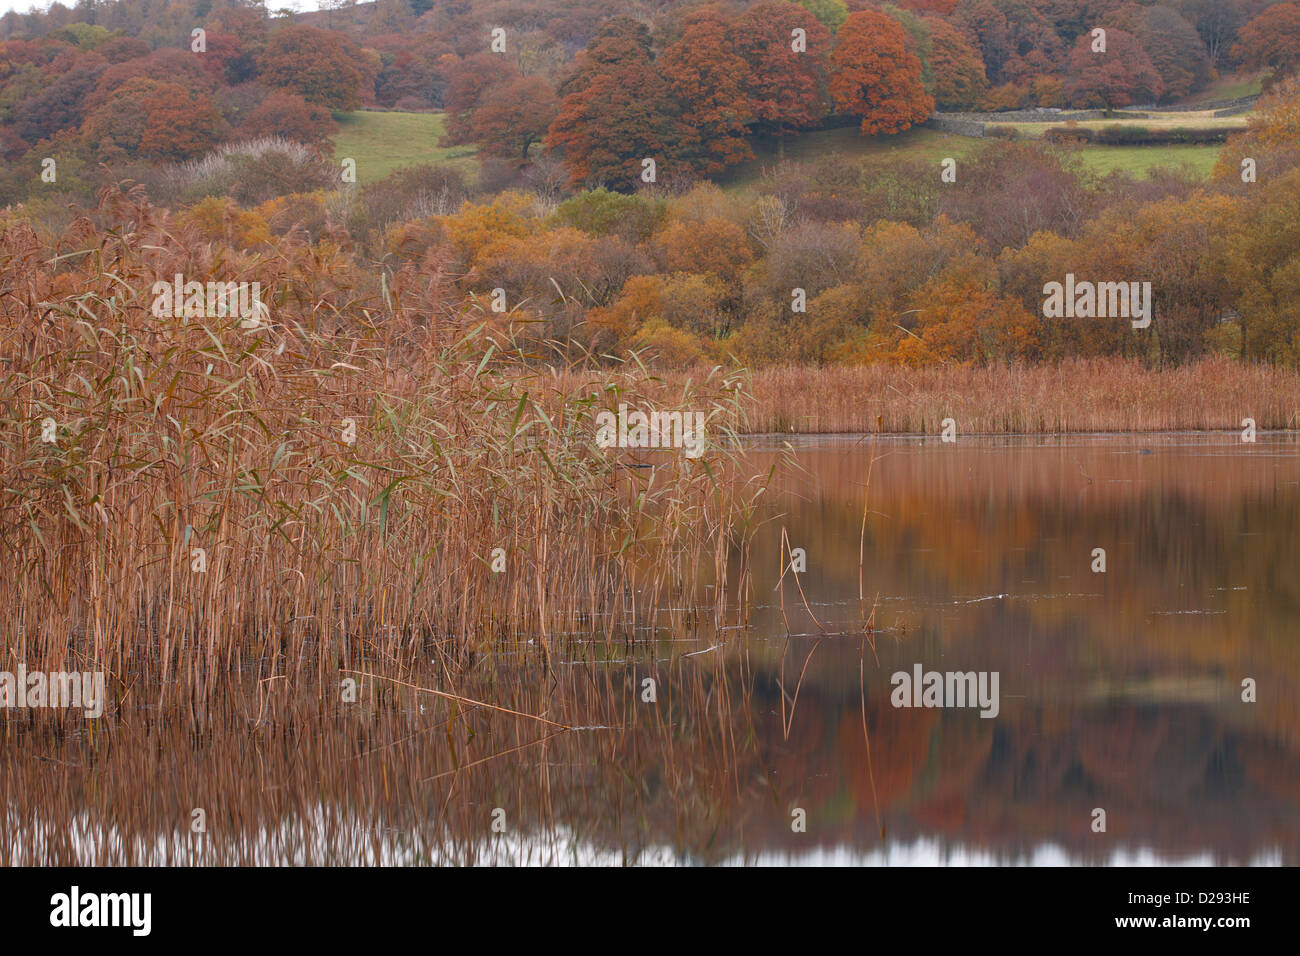 Roseaux communs (Phragmites australis) bordant un lac en automne. Esthwaite Water, Lake District, Cumbria. L'Angleterre. Octobre. Banque D'Images